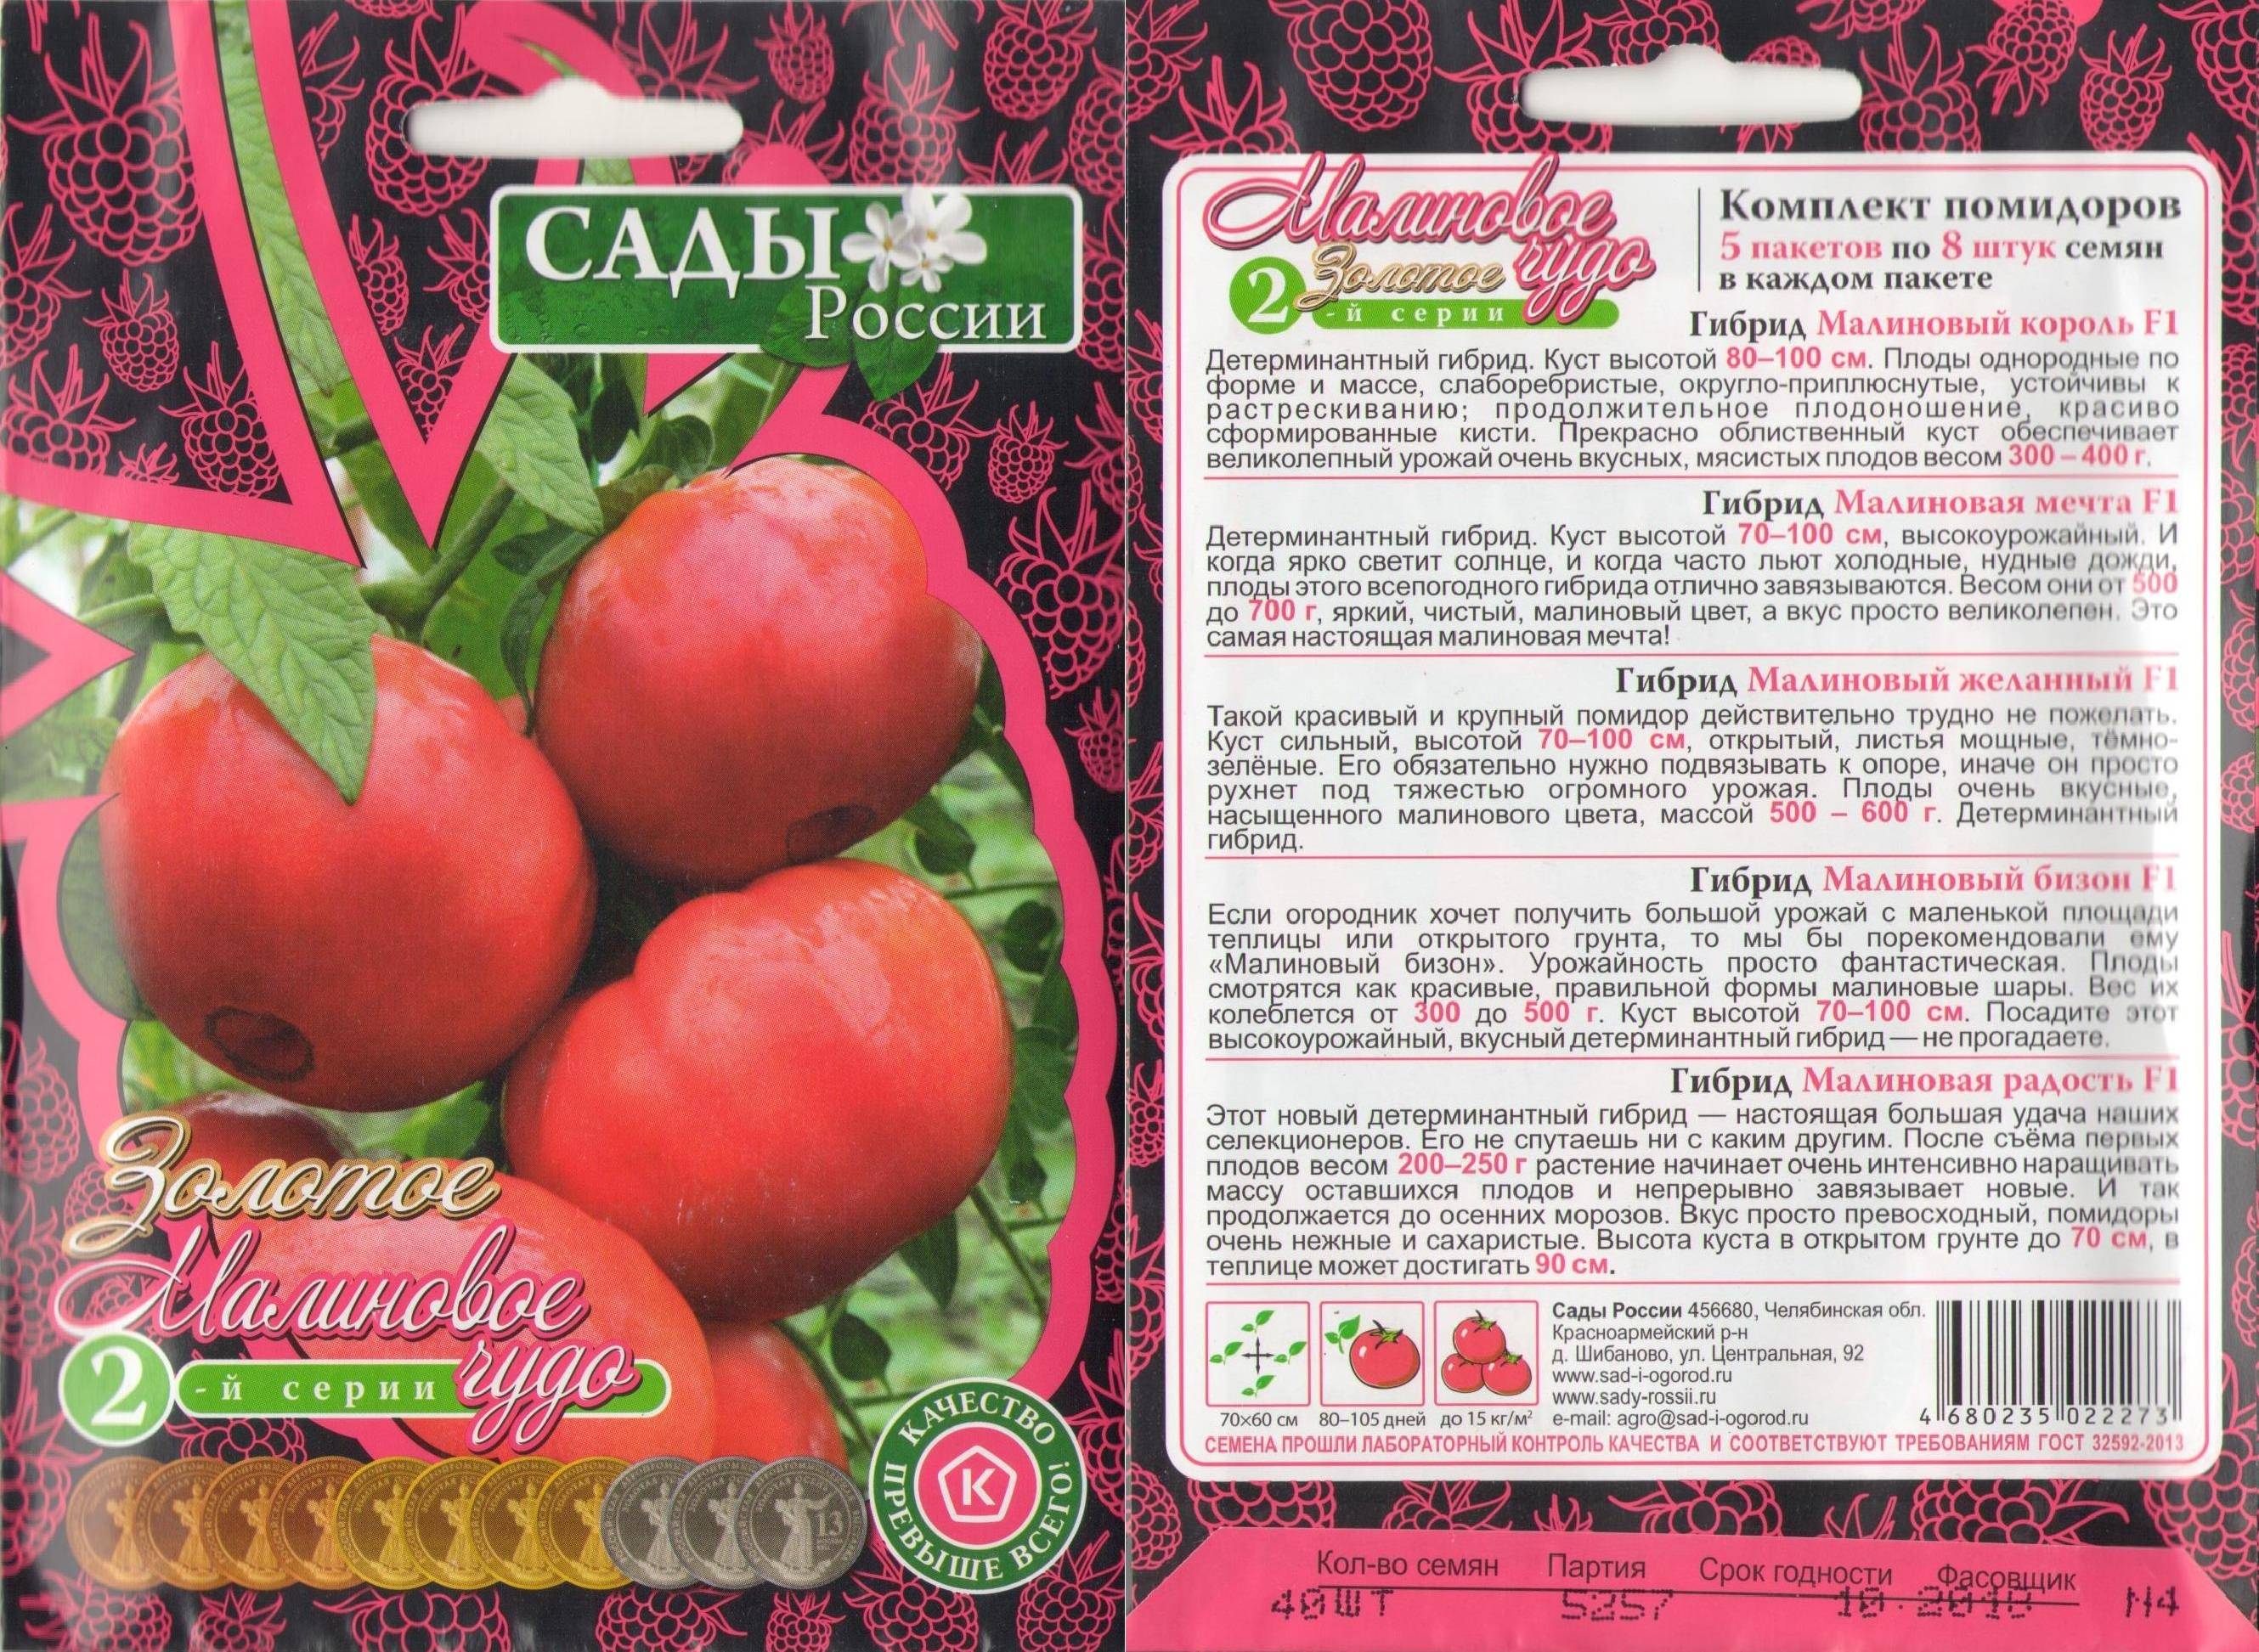 Описание сорта томата Малиновое чудо, его характеристика и выращивание